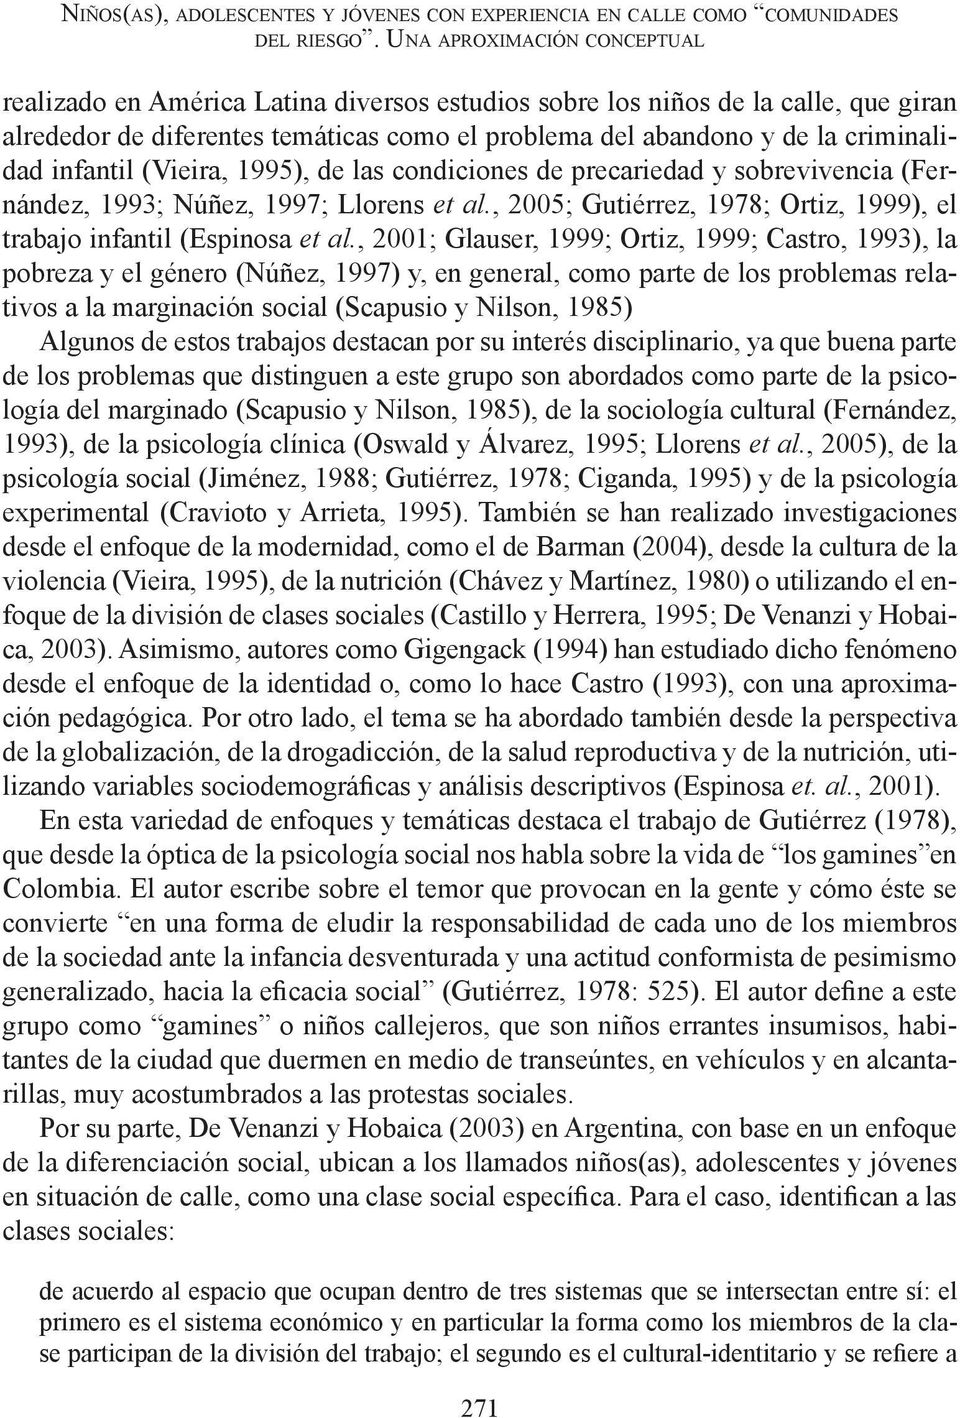 infantil (Vieira, 1995), de las condiciones de precariedad y sobrevivencia (Fernández, 1993; Núñez, 1997; Llorens et al., 2005; Gutiérrez, 1978; Ortiz, 1999), el trabajo infantil (Espinosa et al.